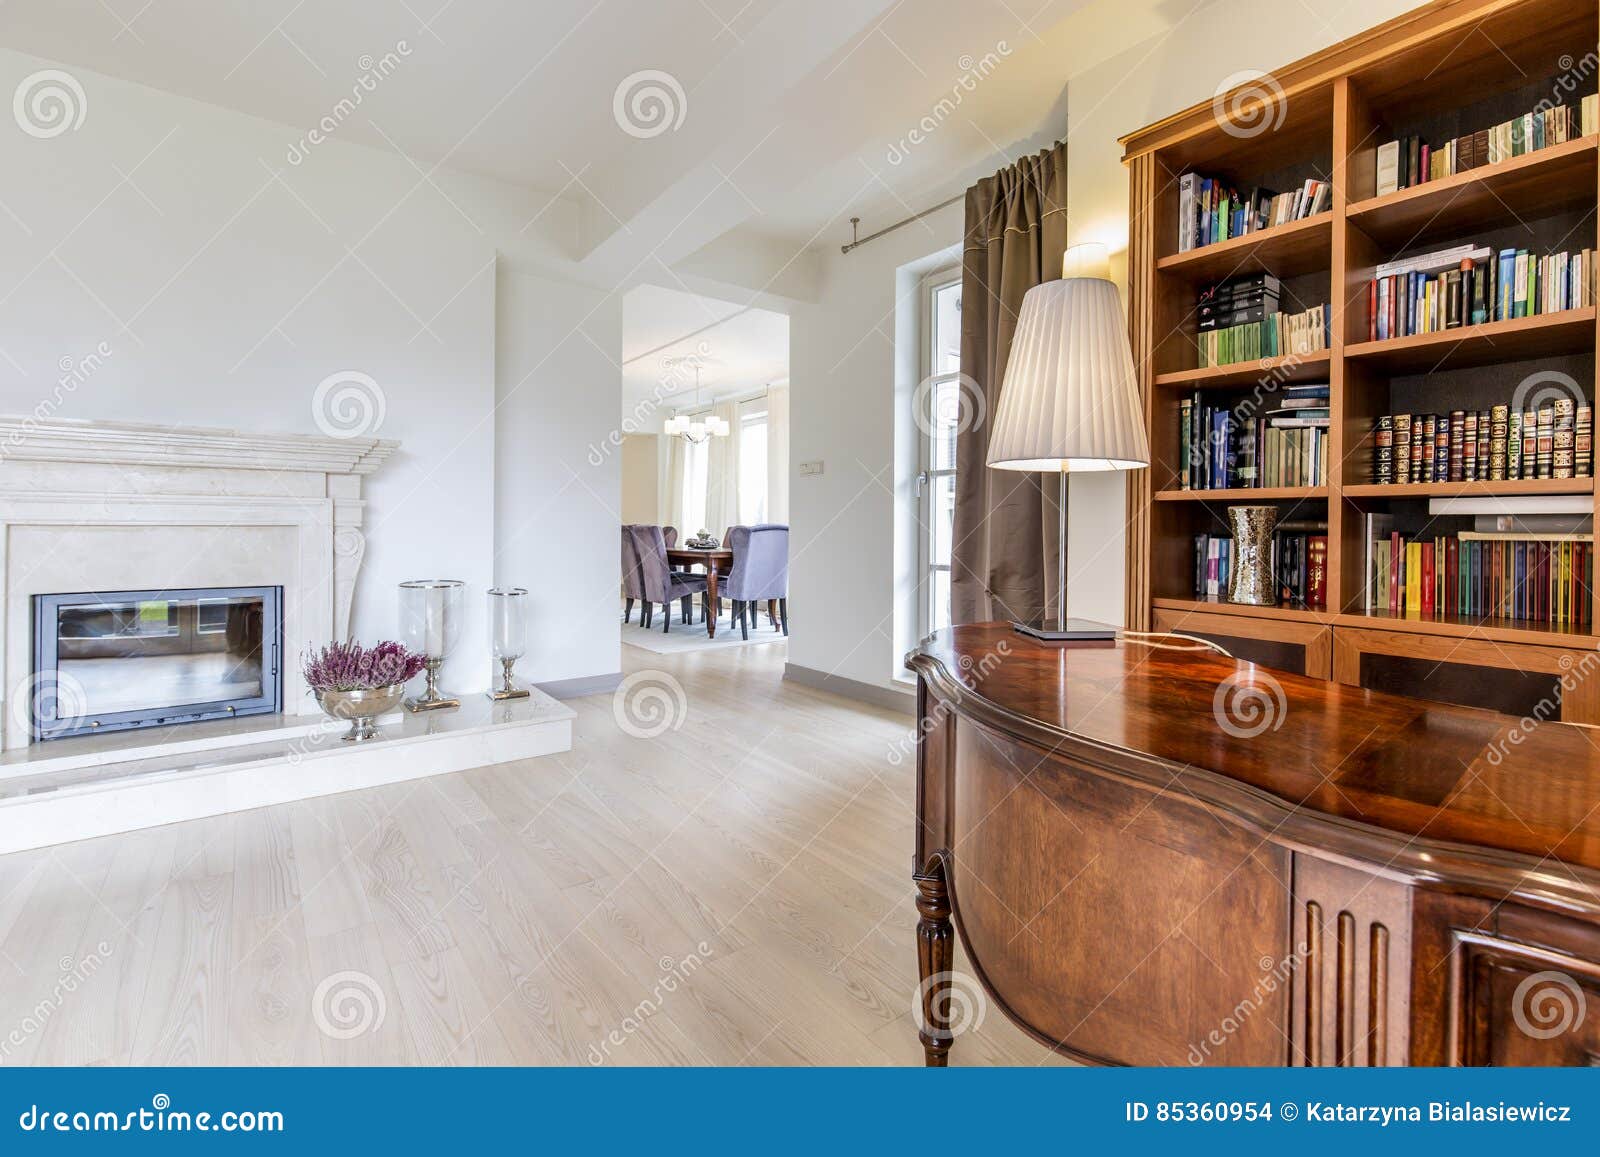 Elegant Office With Hardwood Desk And Bookcase Stock Photo Image